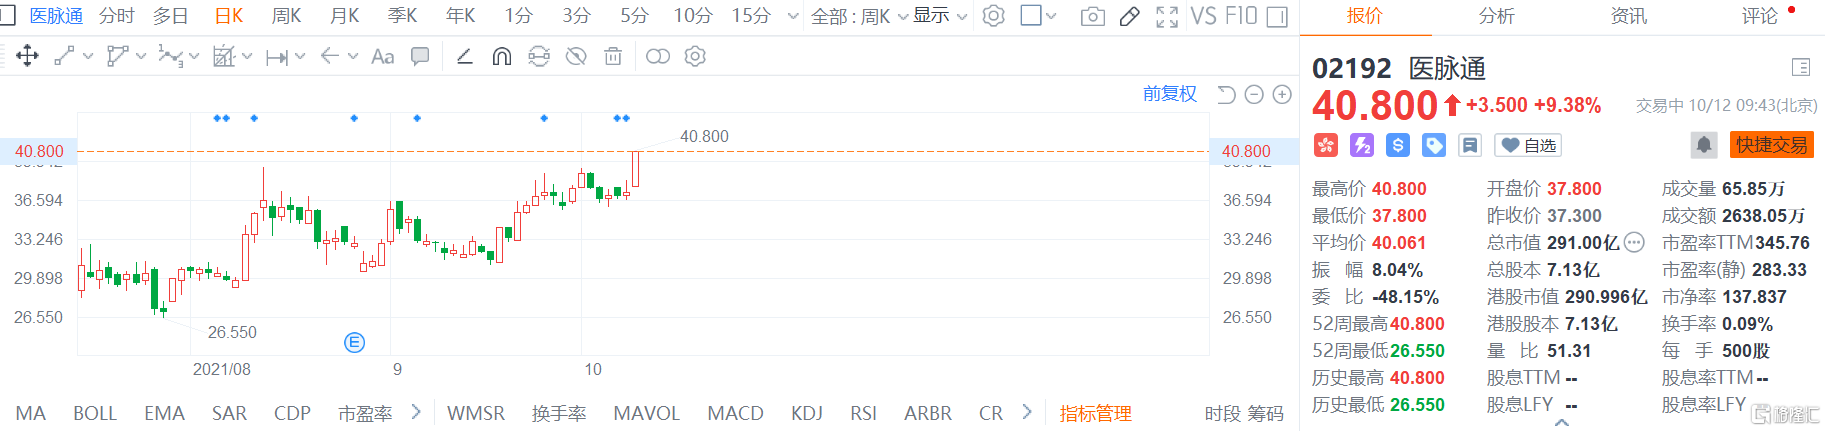 医脉通(2192.HK)股价高开高走，现报40.8港元再创上市以来新高